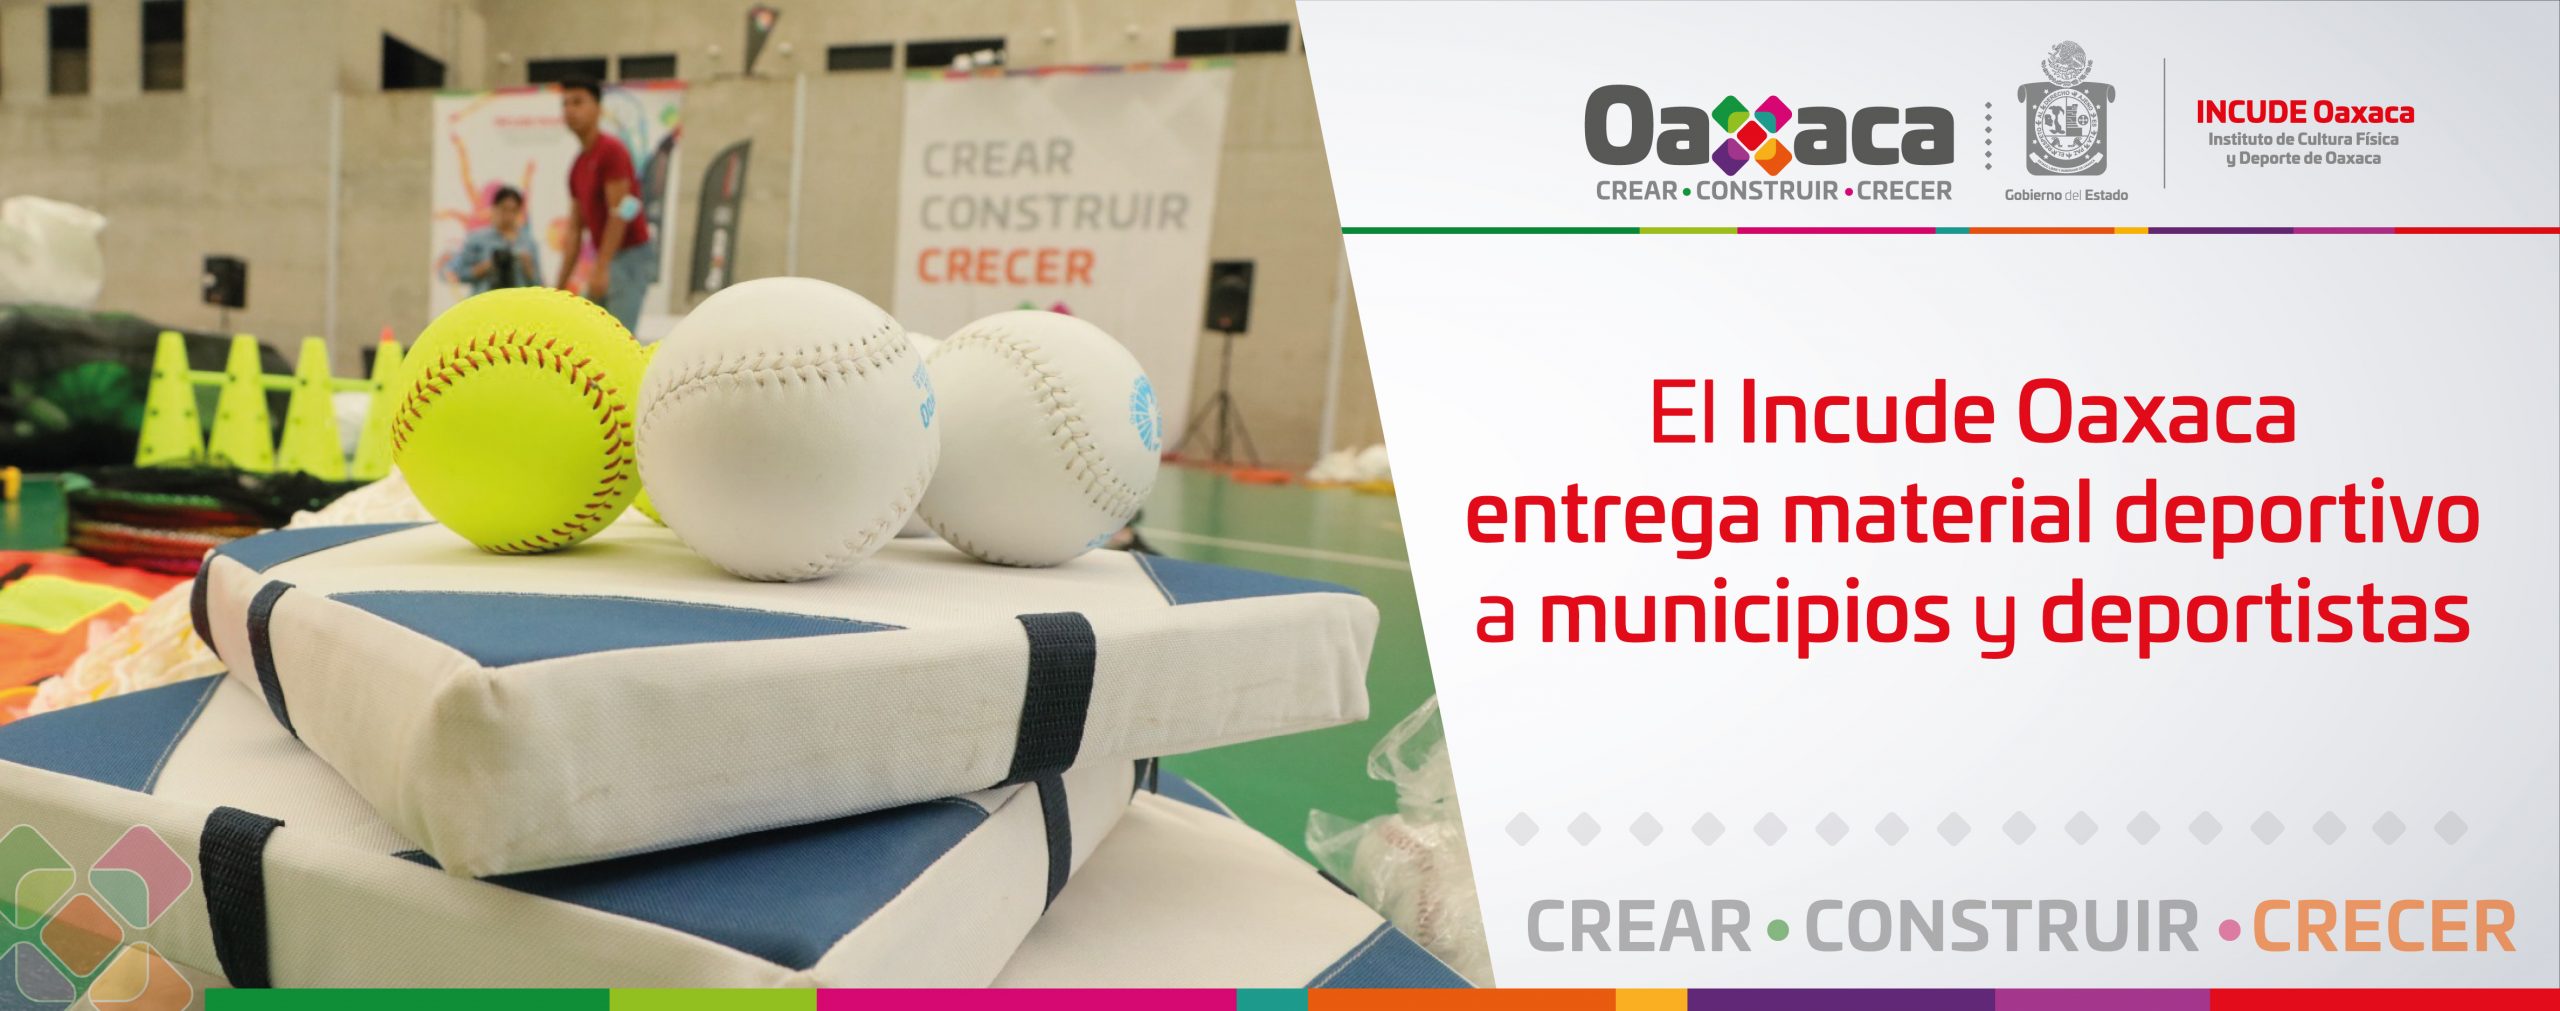 El Incude Oaxaca entrega material deportivo  a municipios y deportistas